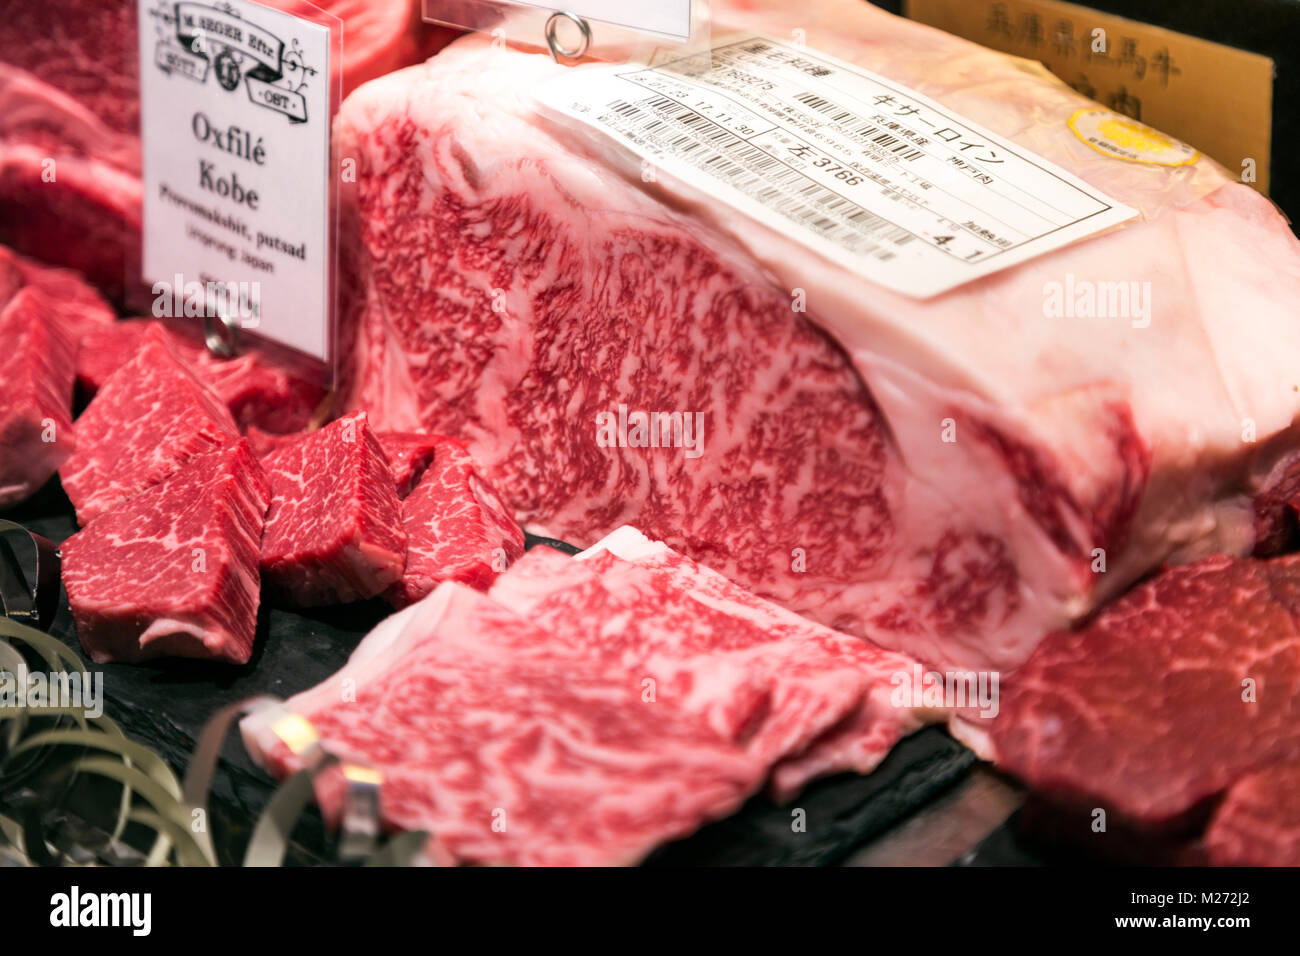 Mármoles grasos carnes rojas, la carne de vacuno para su venta en la pantalla. Foto de stock